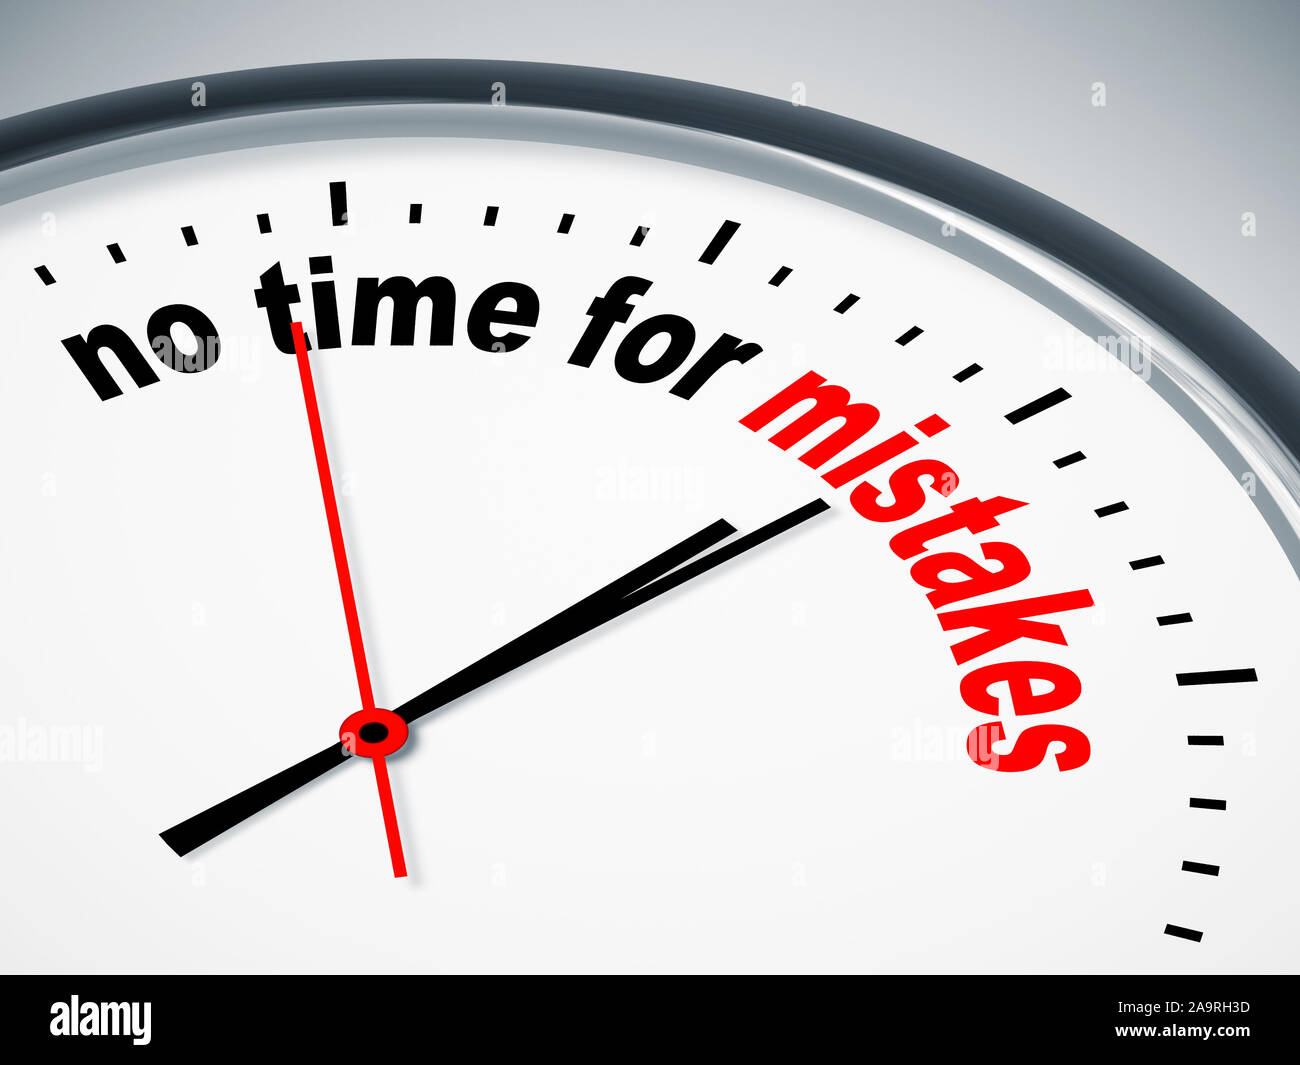 Ein simples Ziffernblatt einer Uhr mit der Aufschrift: 'no time for mistakes' Stock Photo